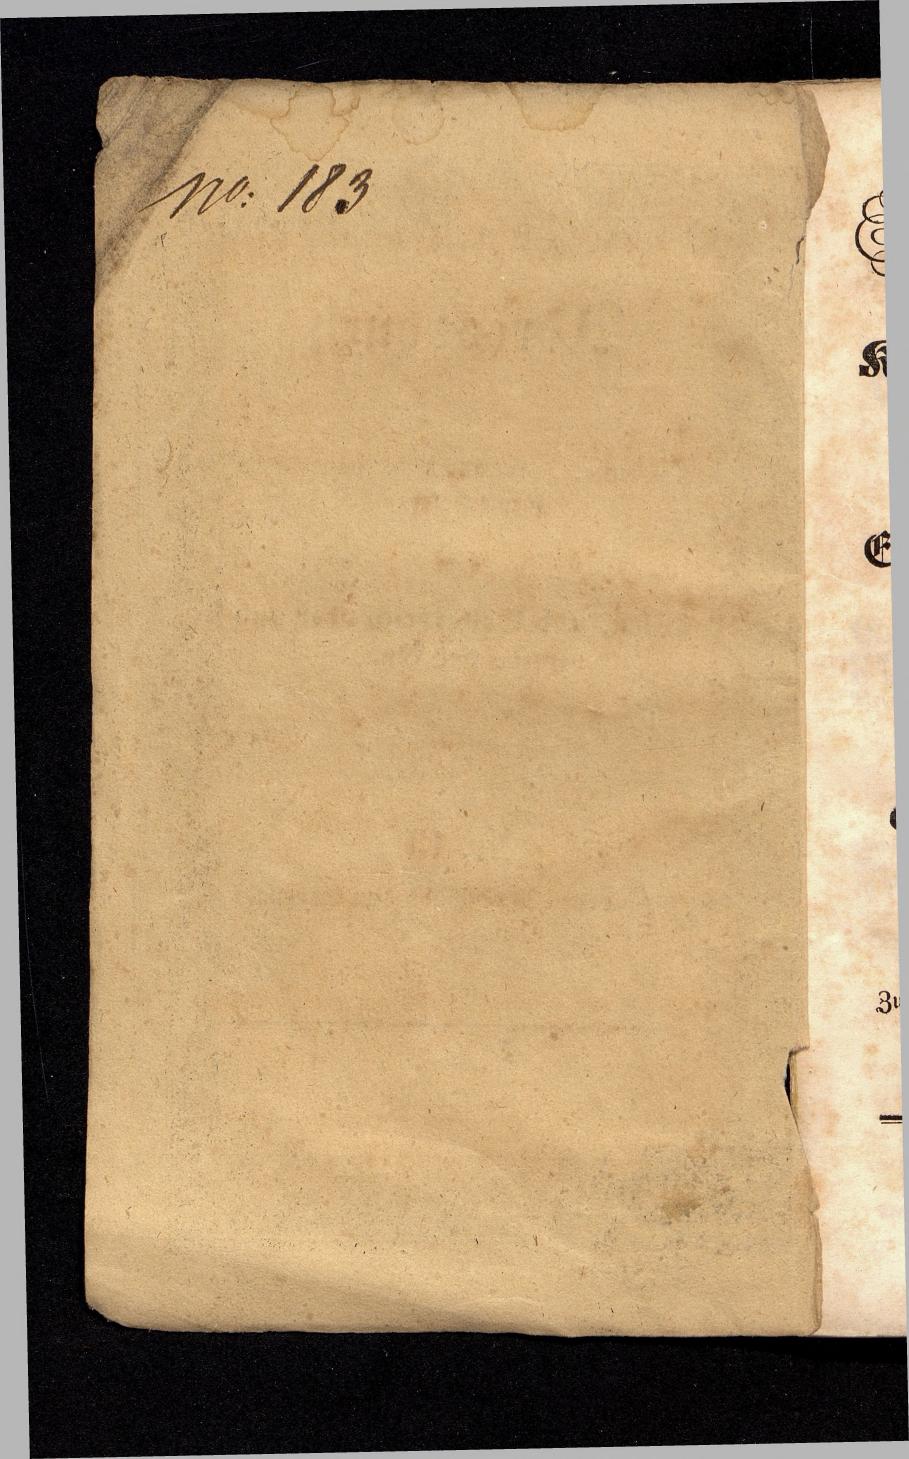 Grosses Adressbuch der Kaufleute. No. 13. Oesterreich ober u. unter der Enns 1844 - Seite 2